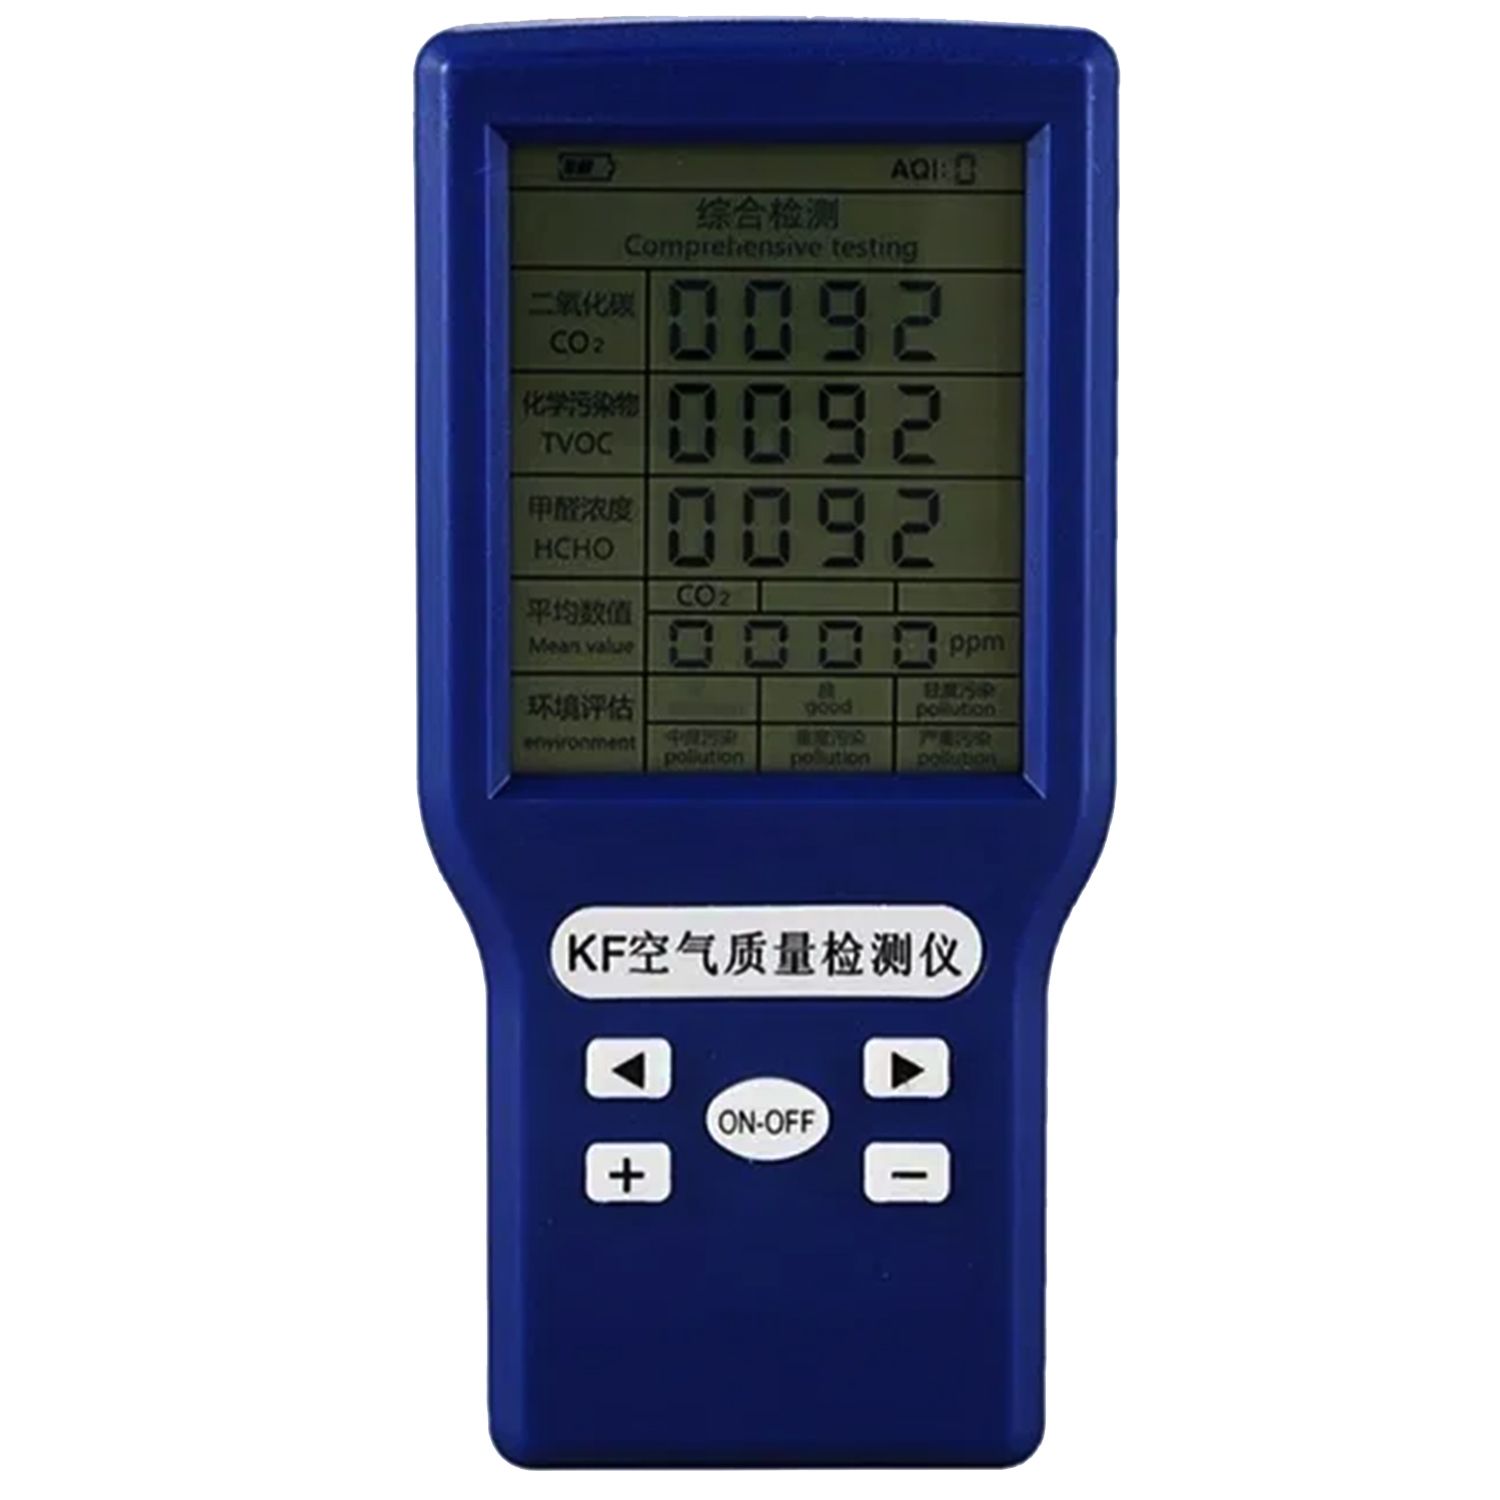 Анализатор качества воздуха JSM-131 измеряет СO2, TVOC, HCHO